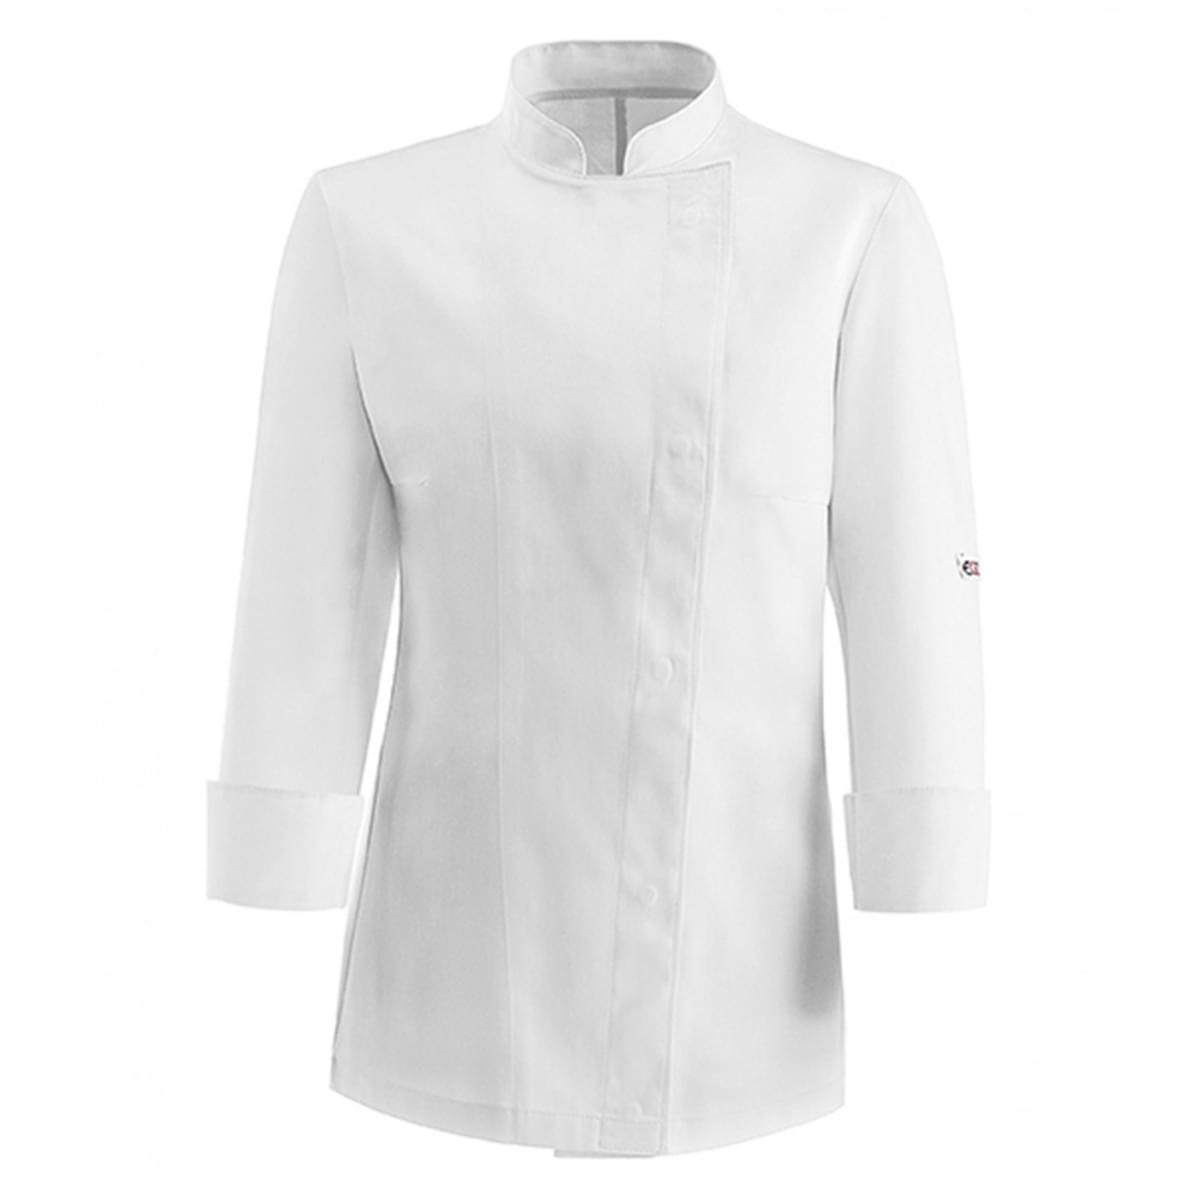 γυναικεία μπλούζα μάγειρα λευκή egochef microfiber